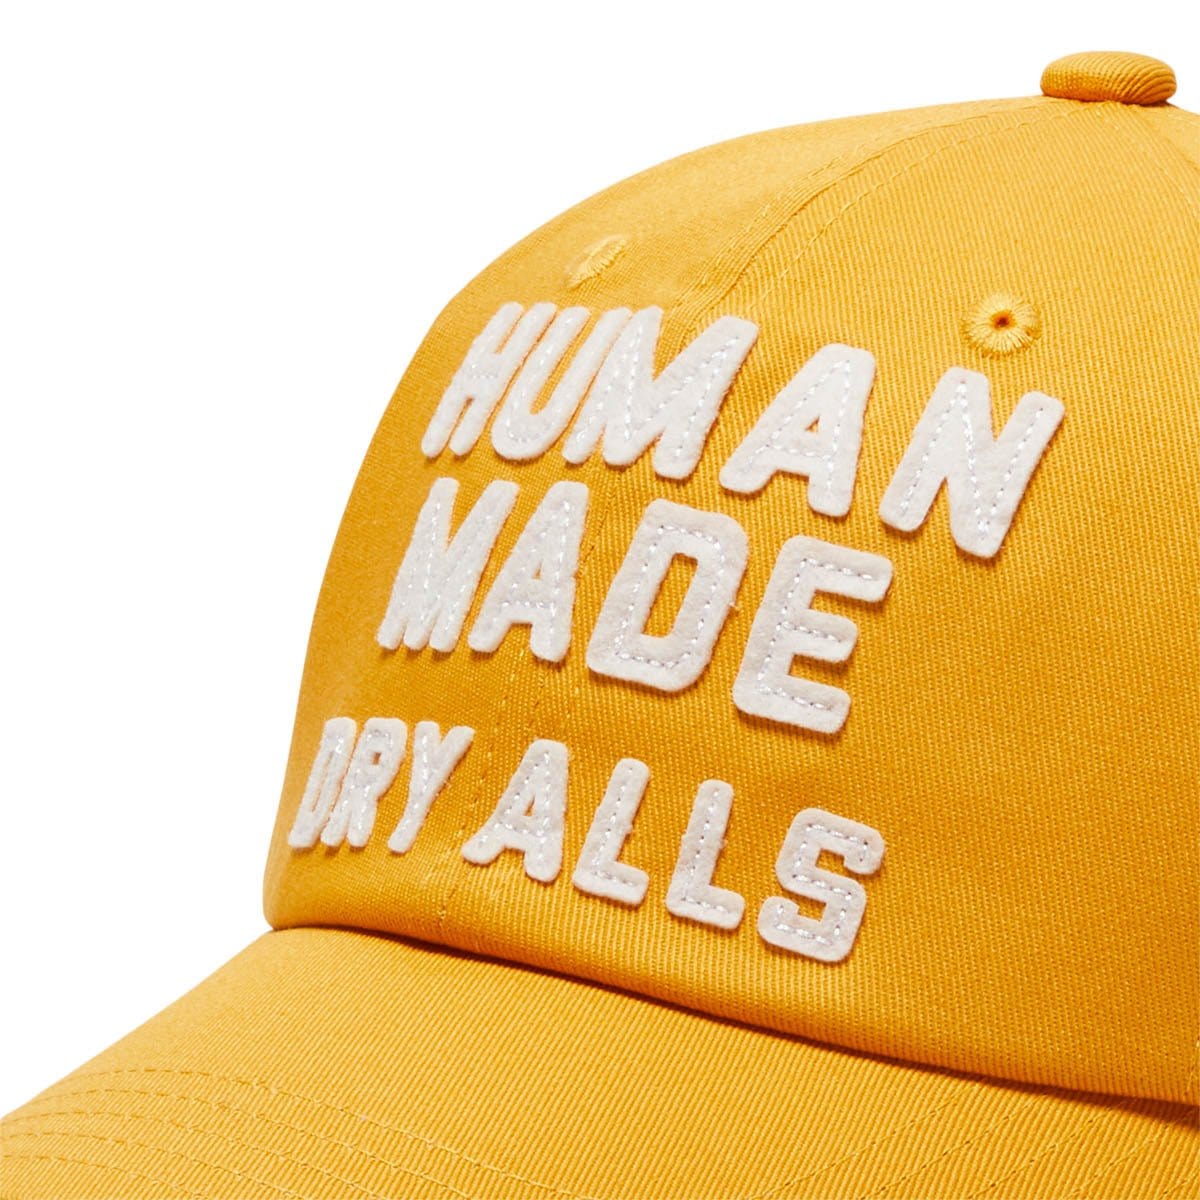 Human Made Headwear YELLOW / O/S 6 PANEL TWILL CAP #2